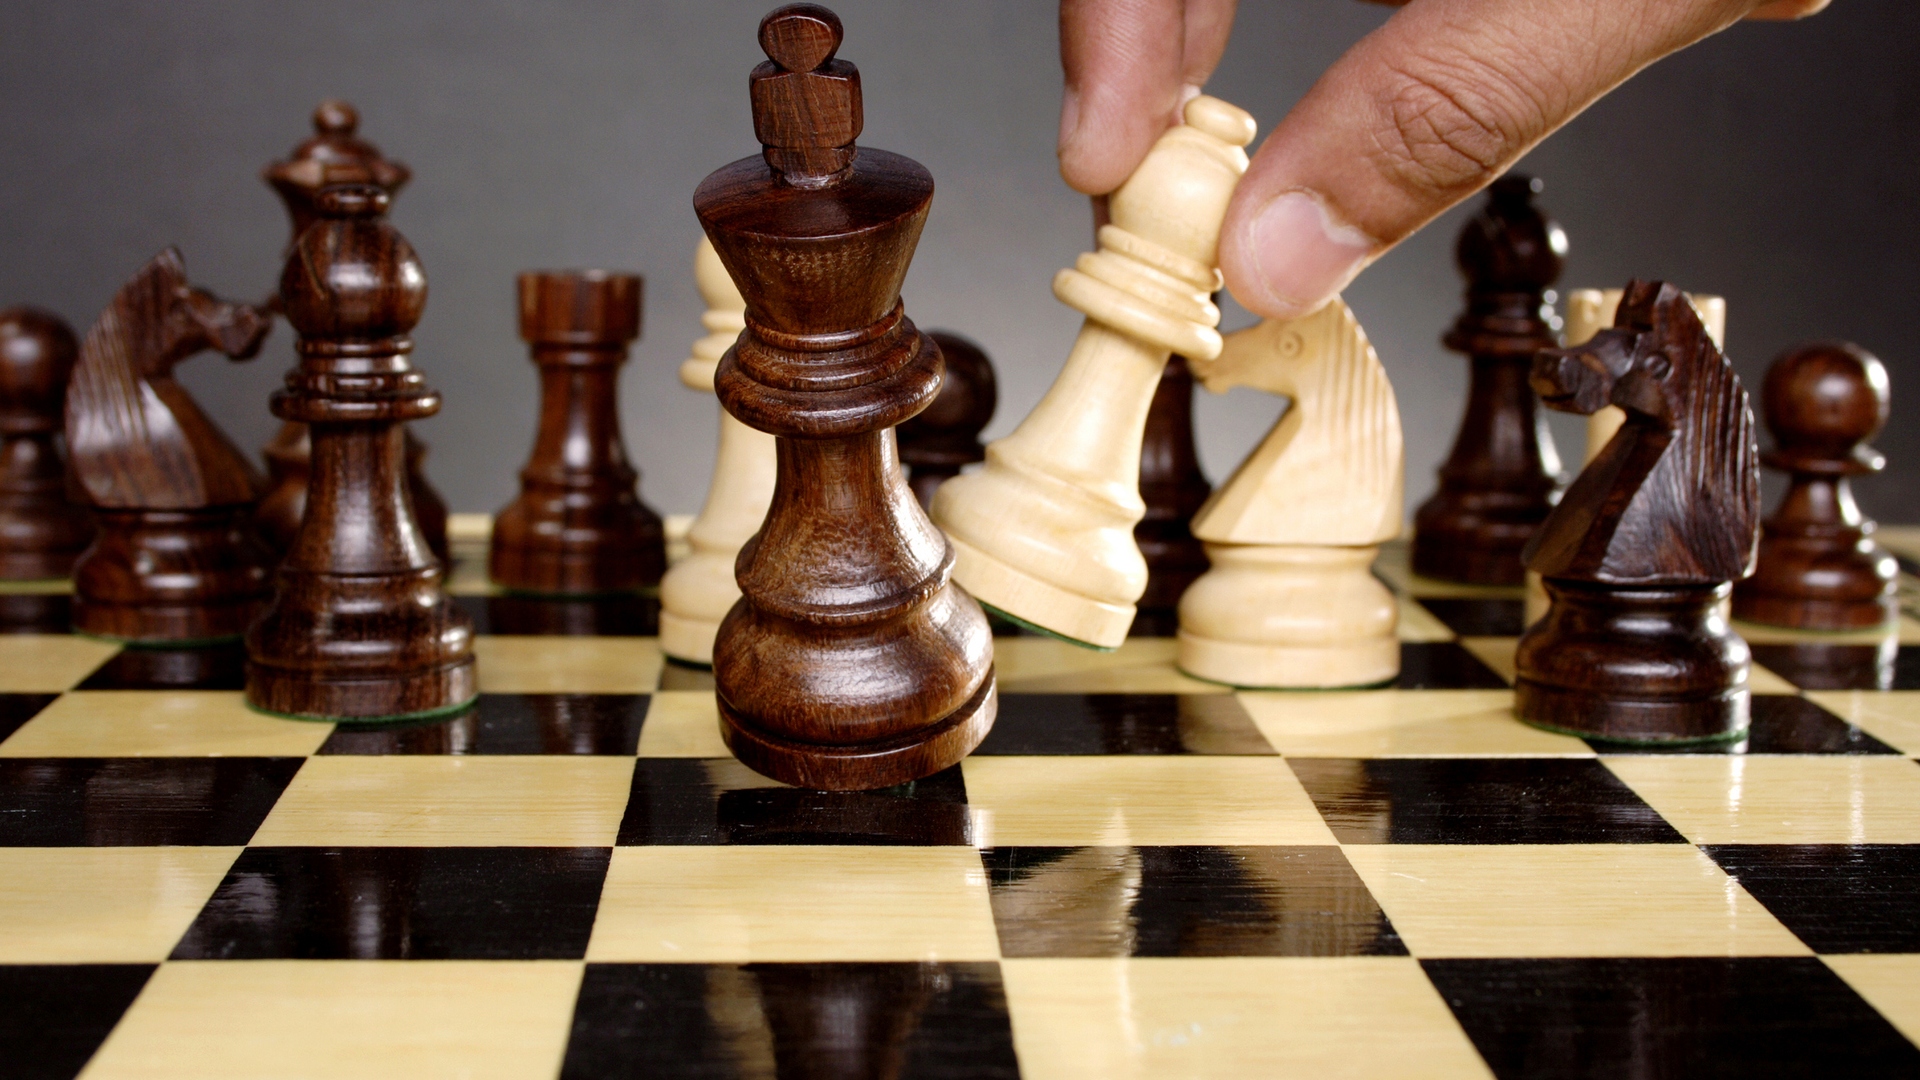 Cuál es el juego de ajedrez más largo que has jugado? - Quora